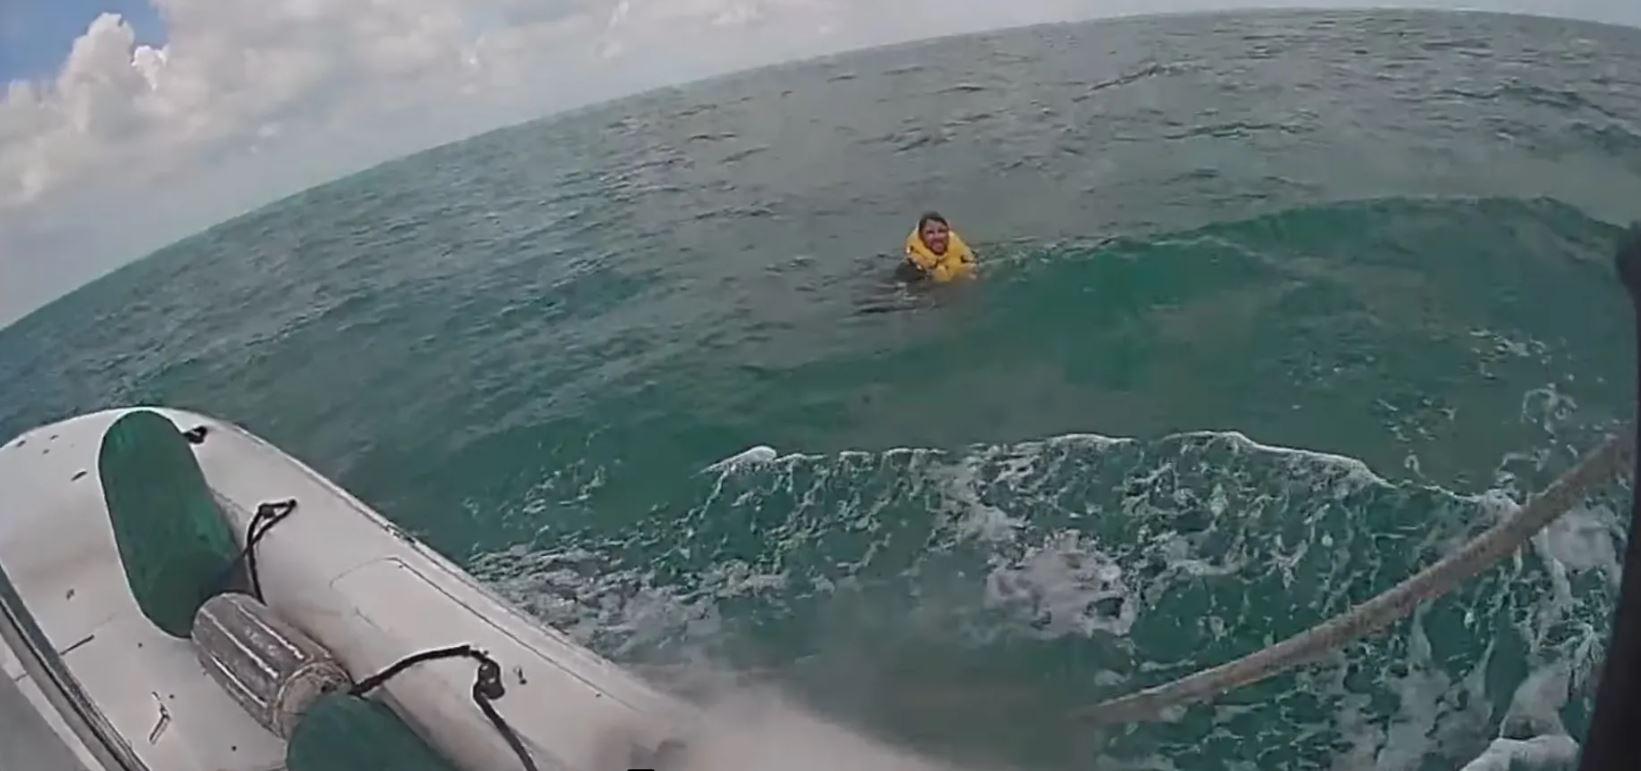 Βίντεο: Η διάσωση ενός άνδρα μετά τη συντριβή αεροπλάνου στον Κόλπο του Μεξικού